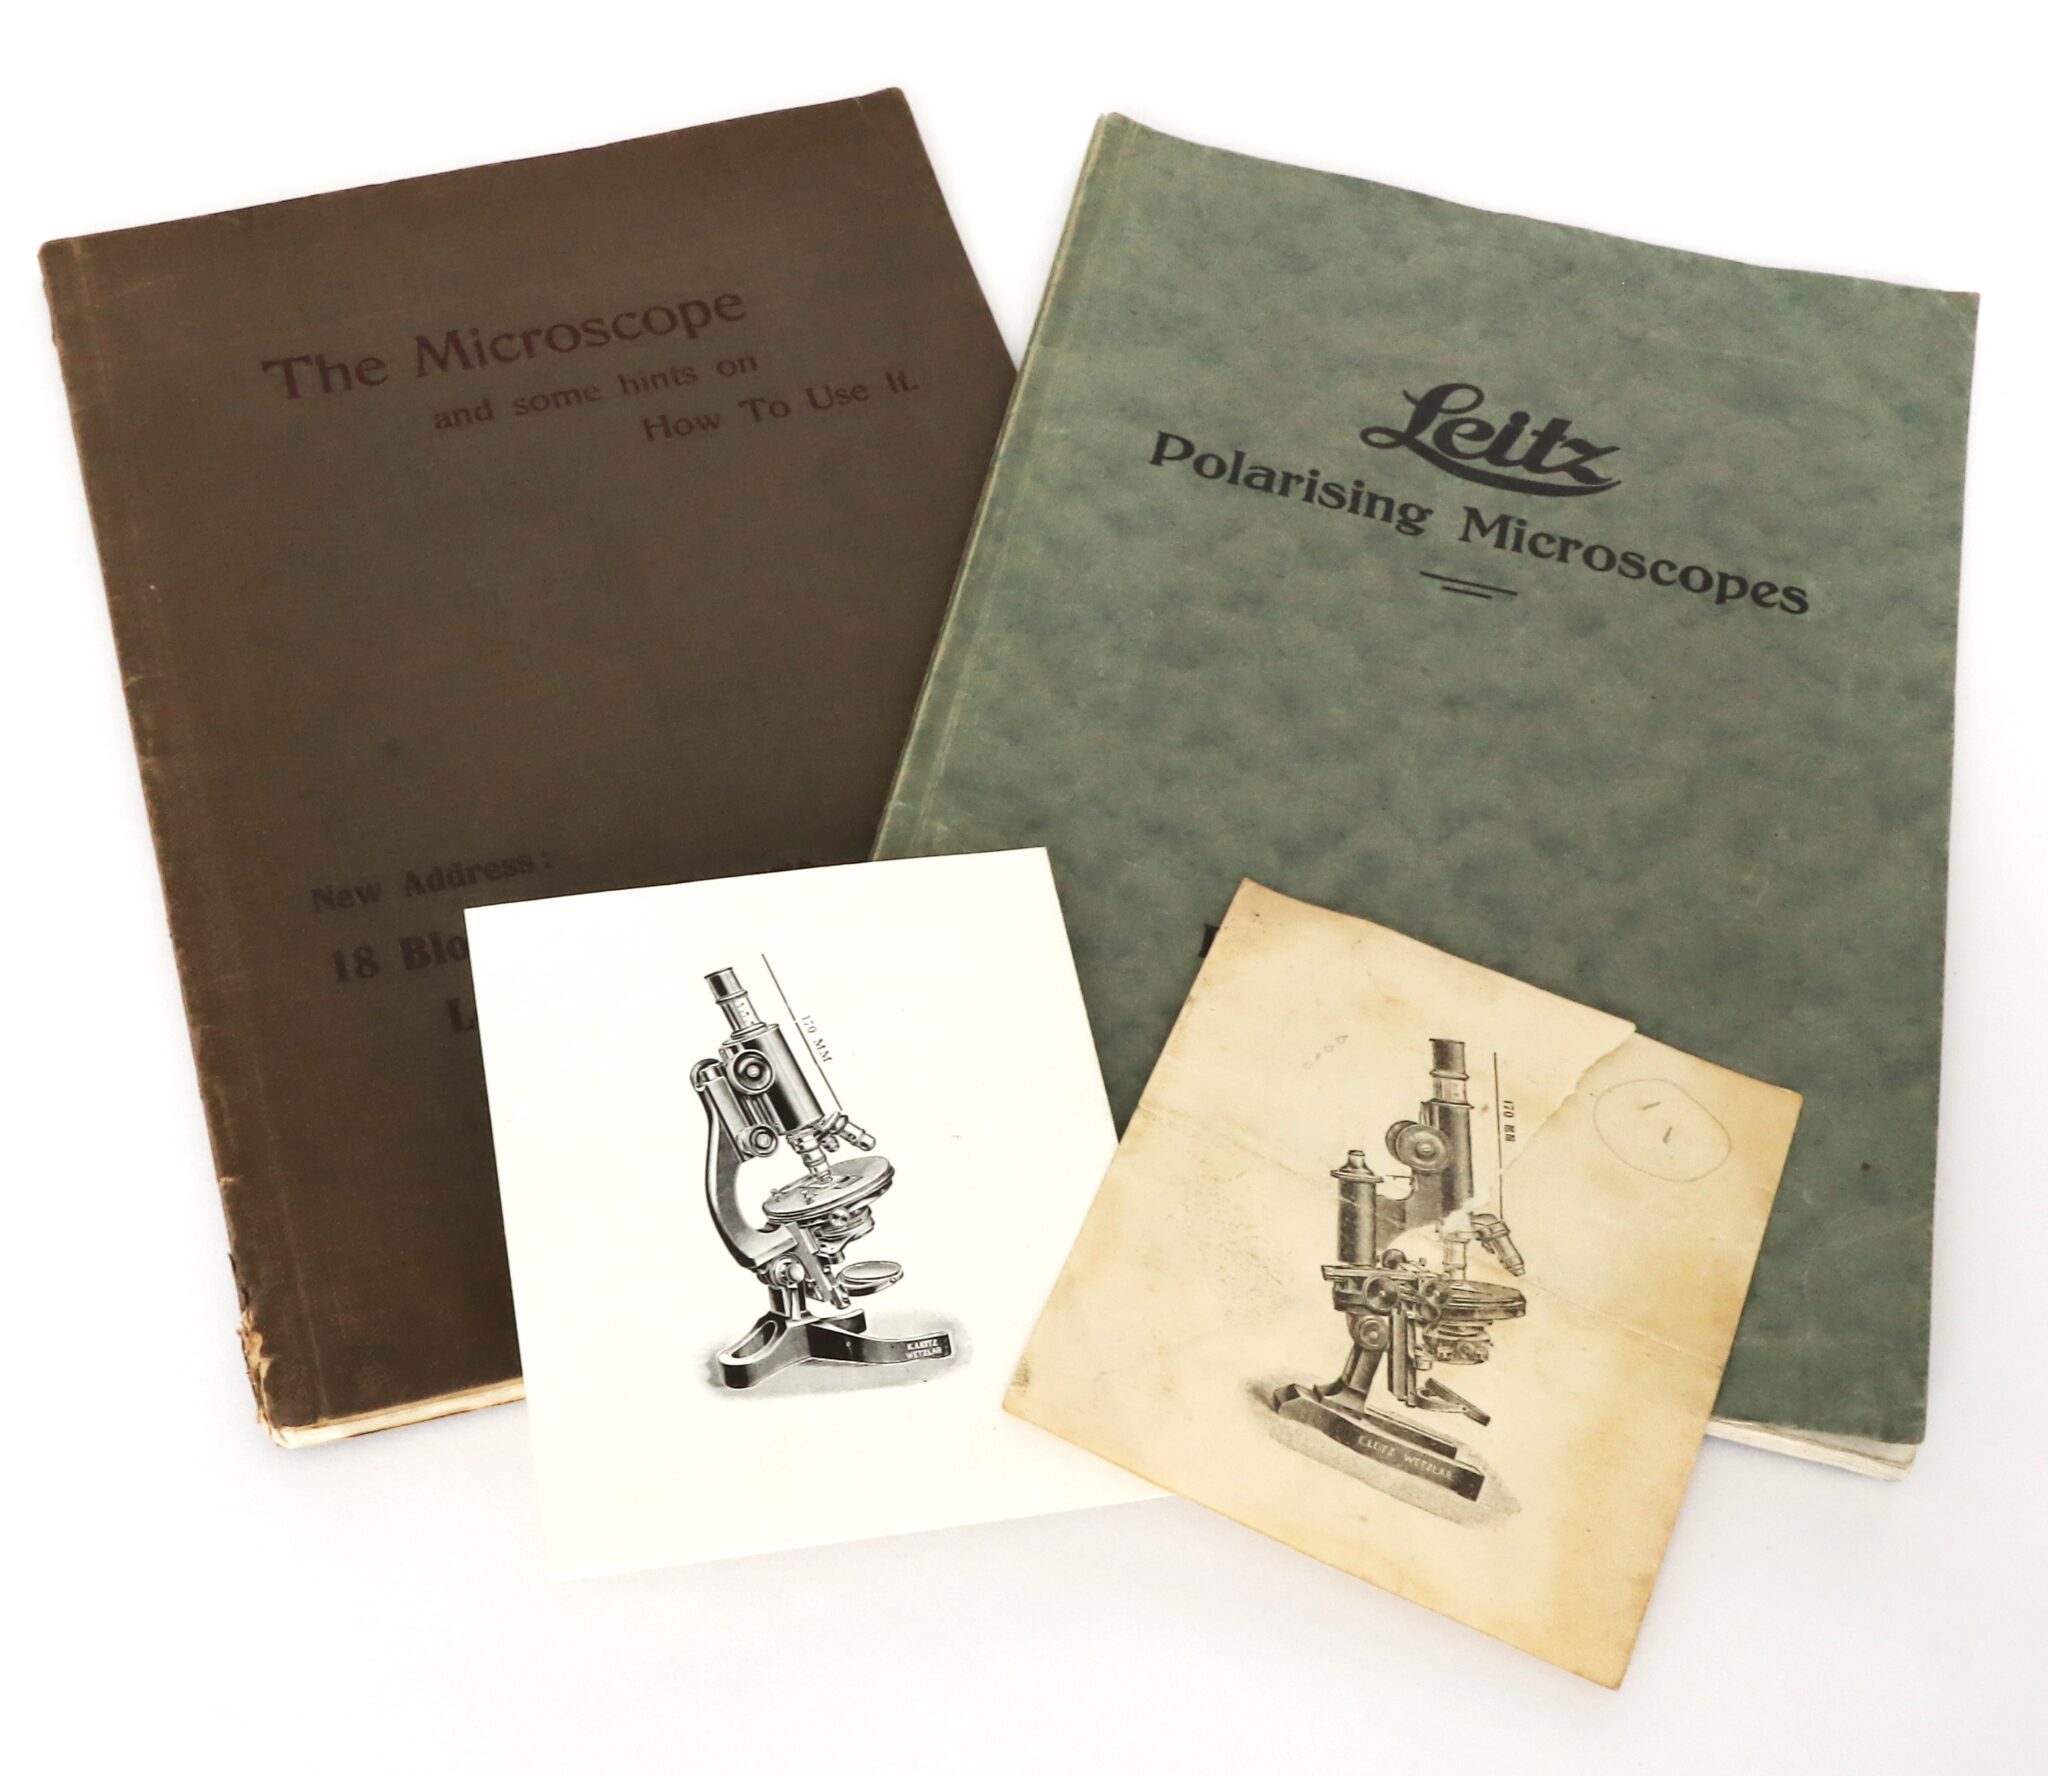 Leitz Polarising Microscopes Catalogue 1925